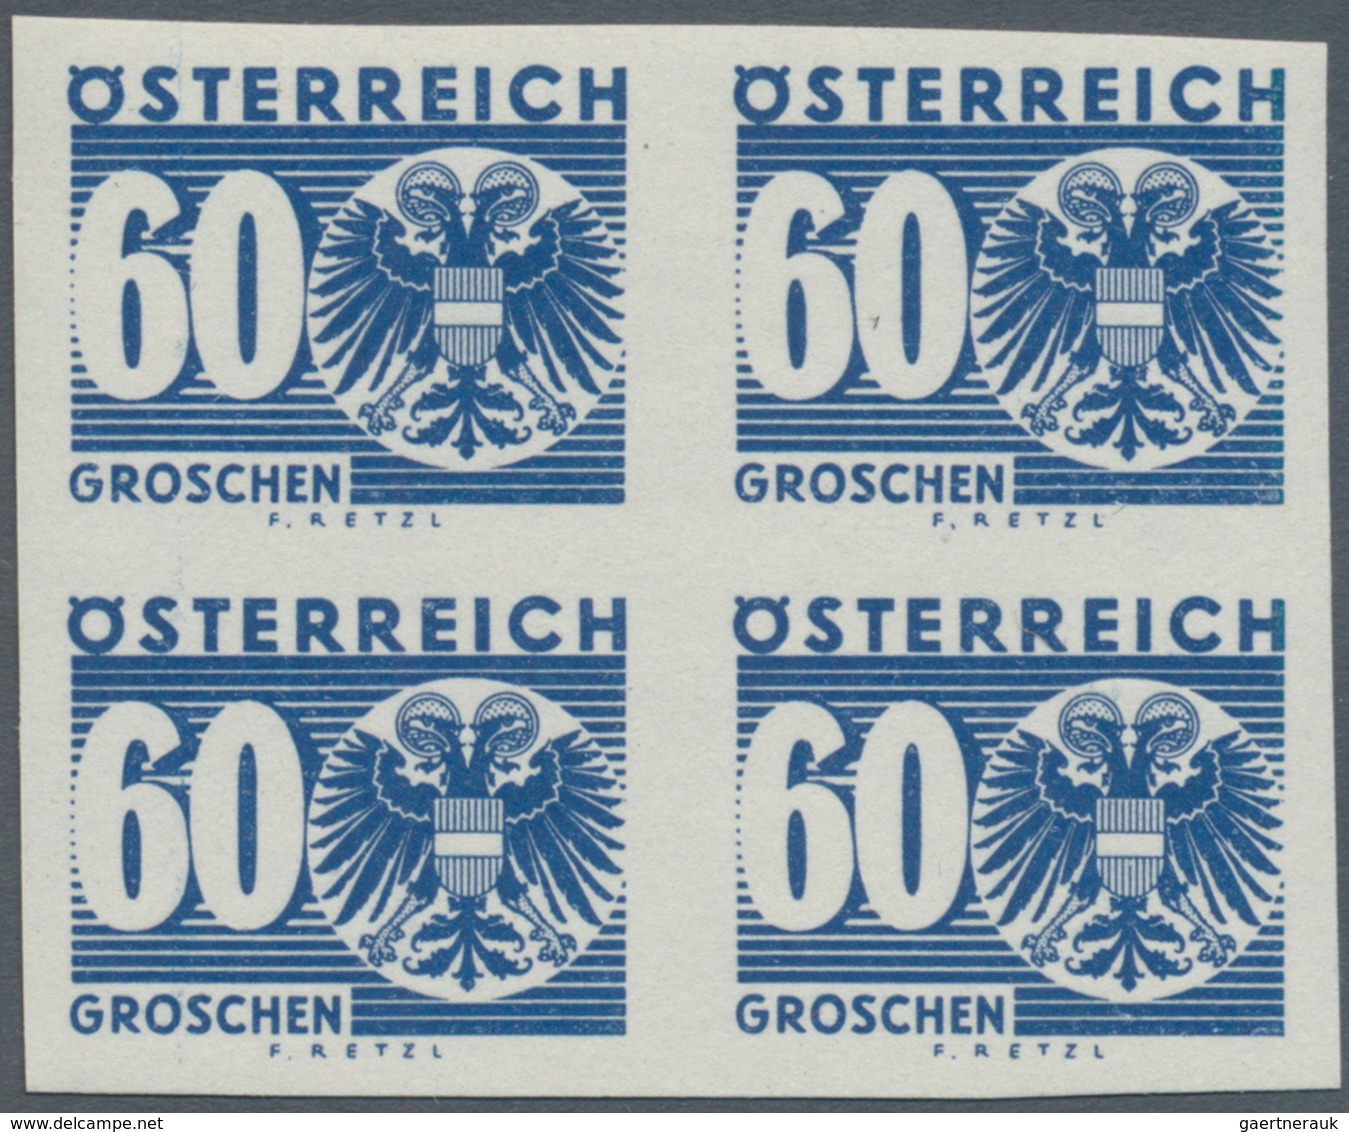 Österreich - Portomarken: 1935, Ziffern/Wappen, 1 Gr. bis 10 Sch., komplette Serie in ungezähnten 4e